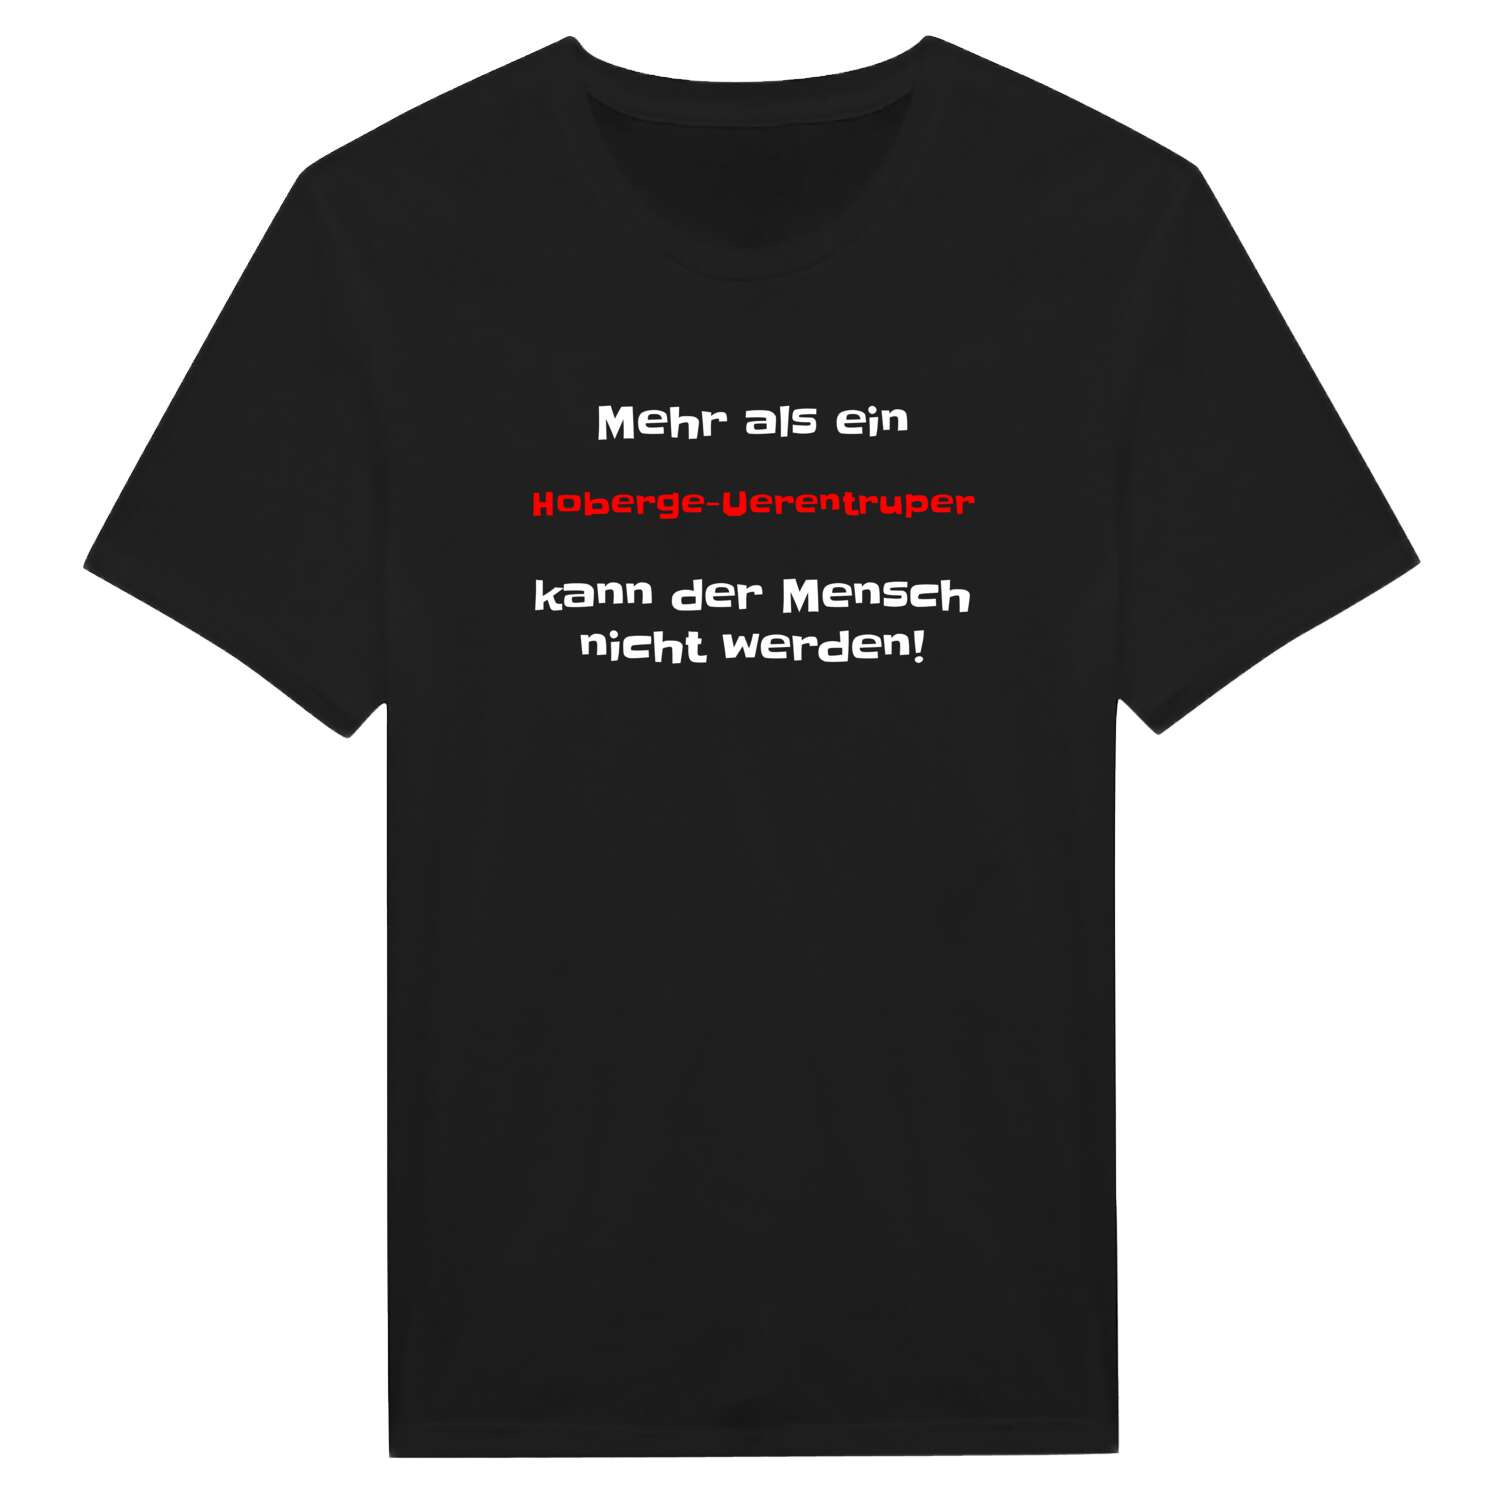 Hoberge-Uerentrup T-Shirt »Mehr als ein«